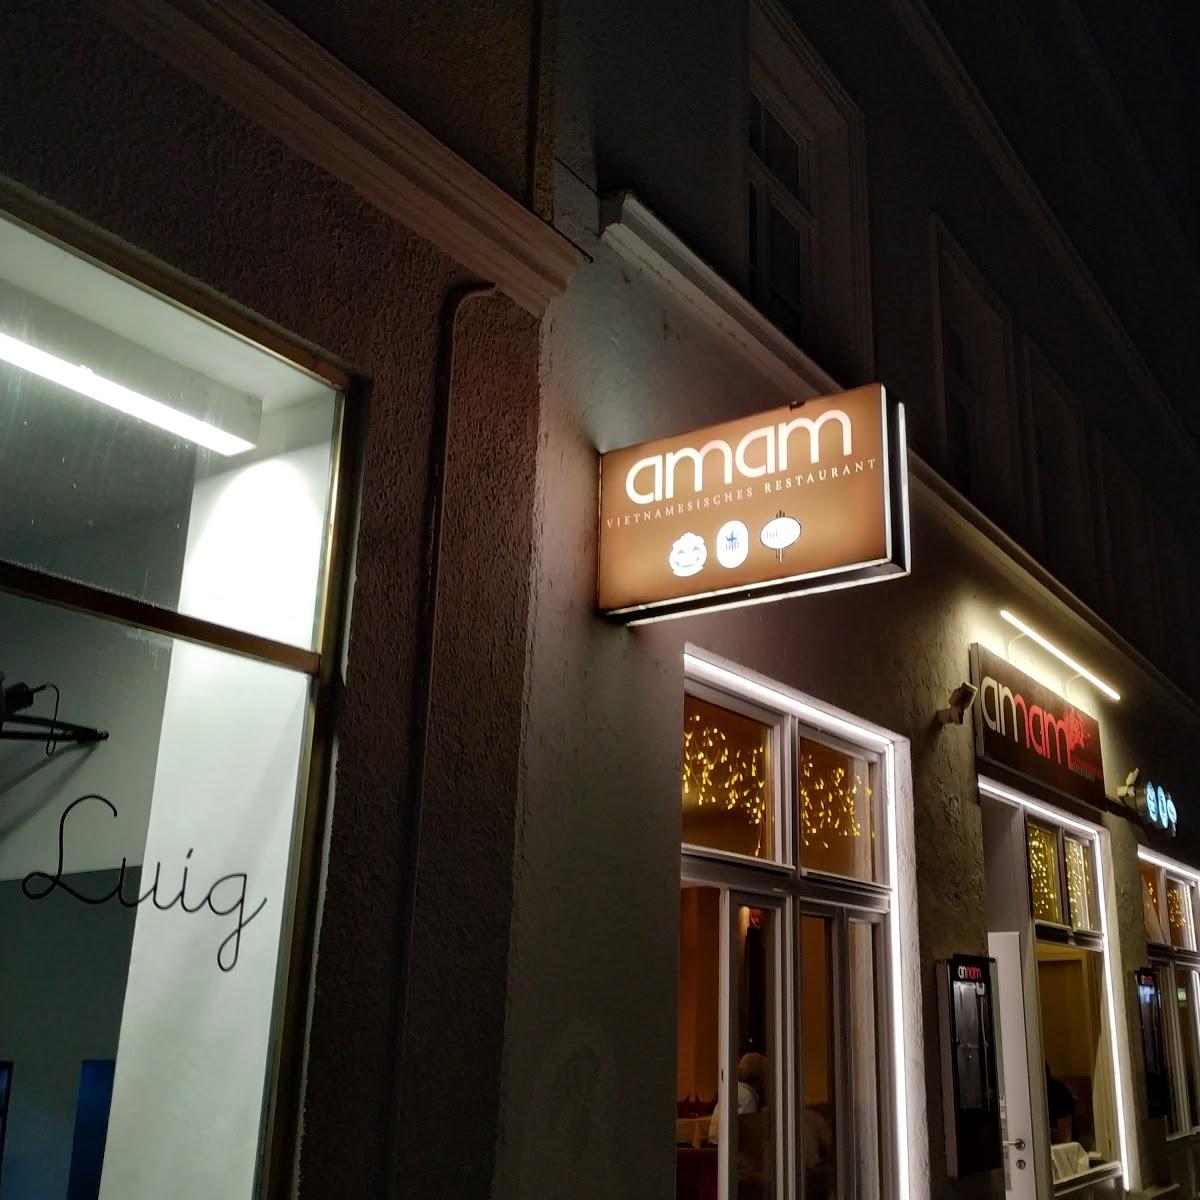 Restaurant "An Nam" in München